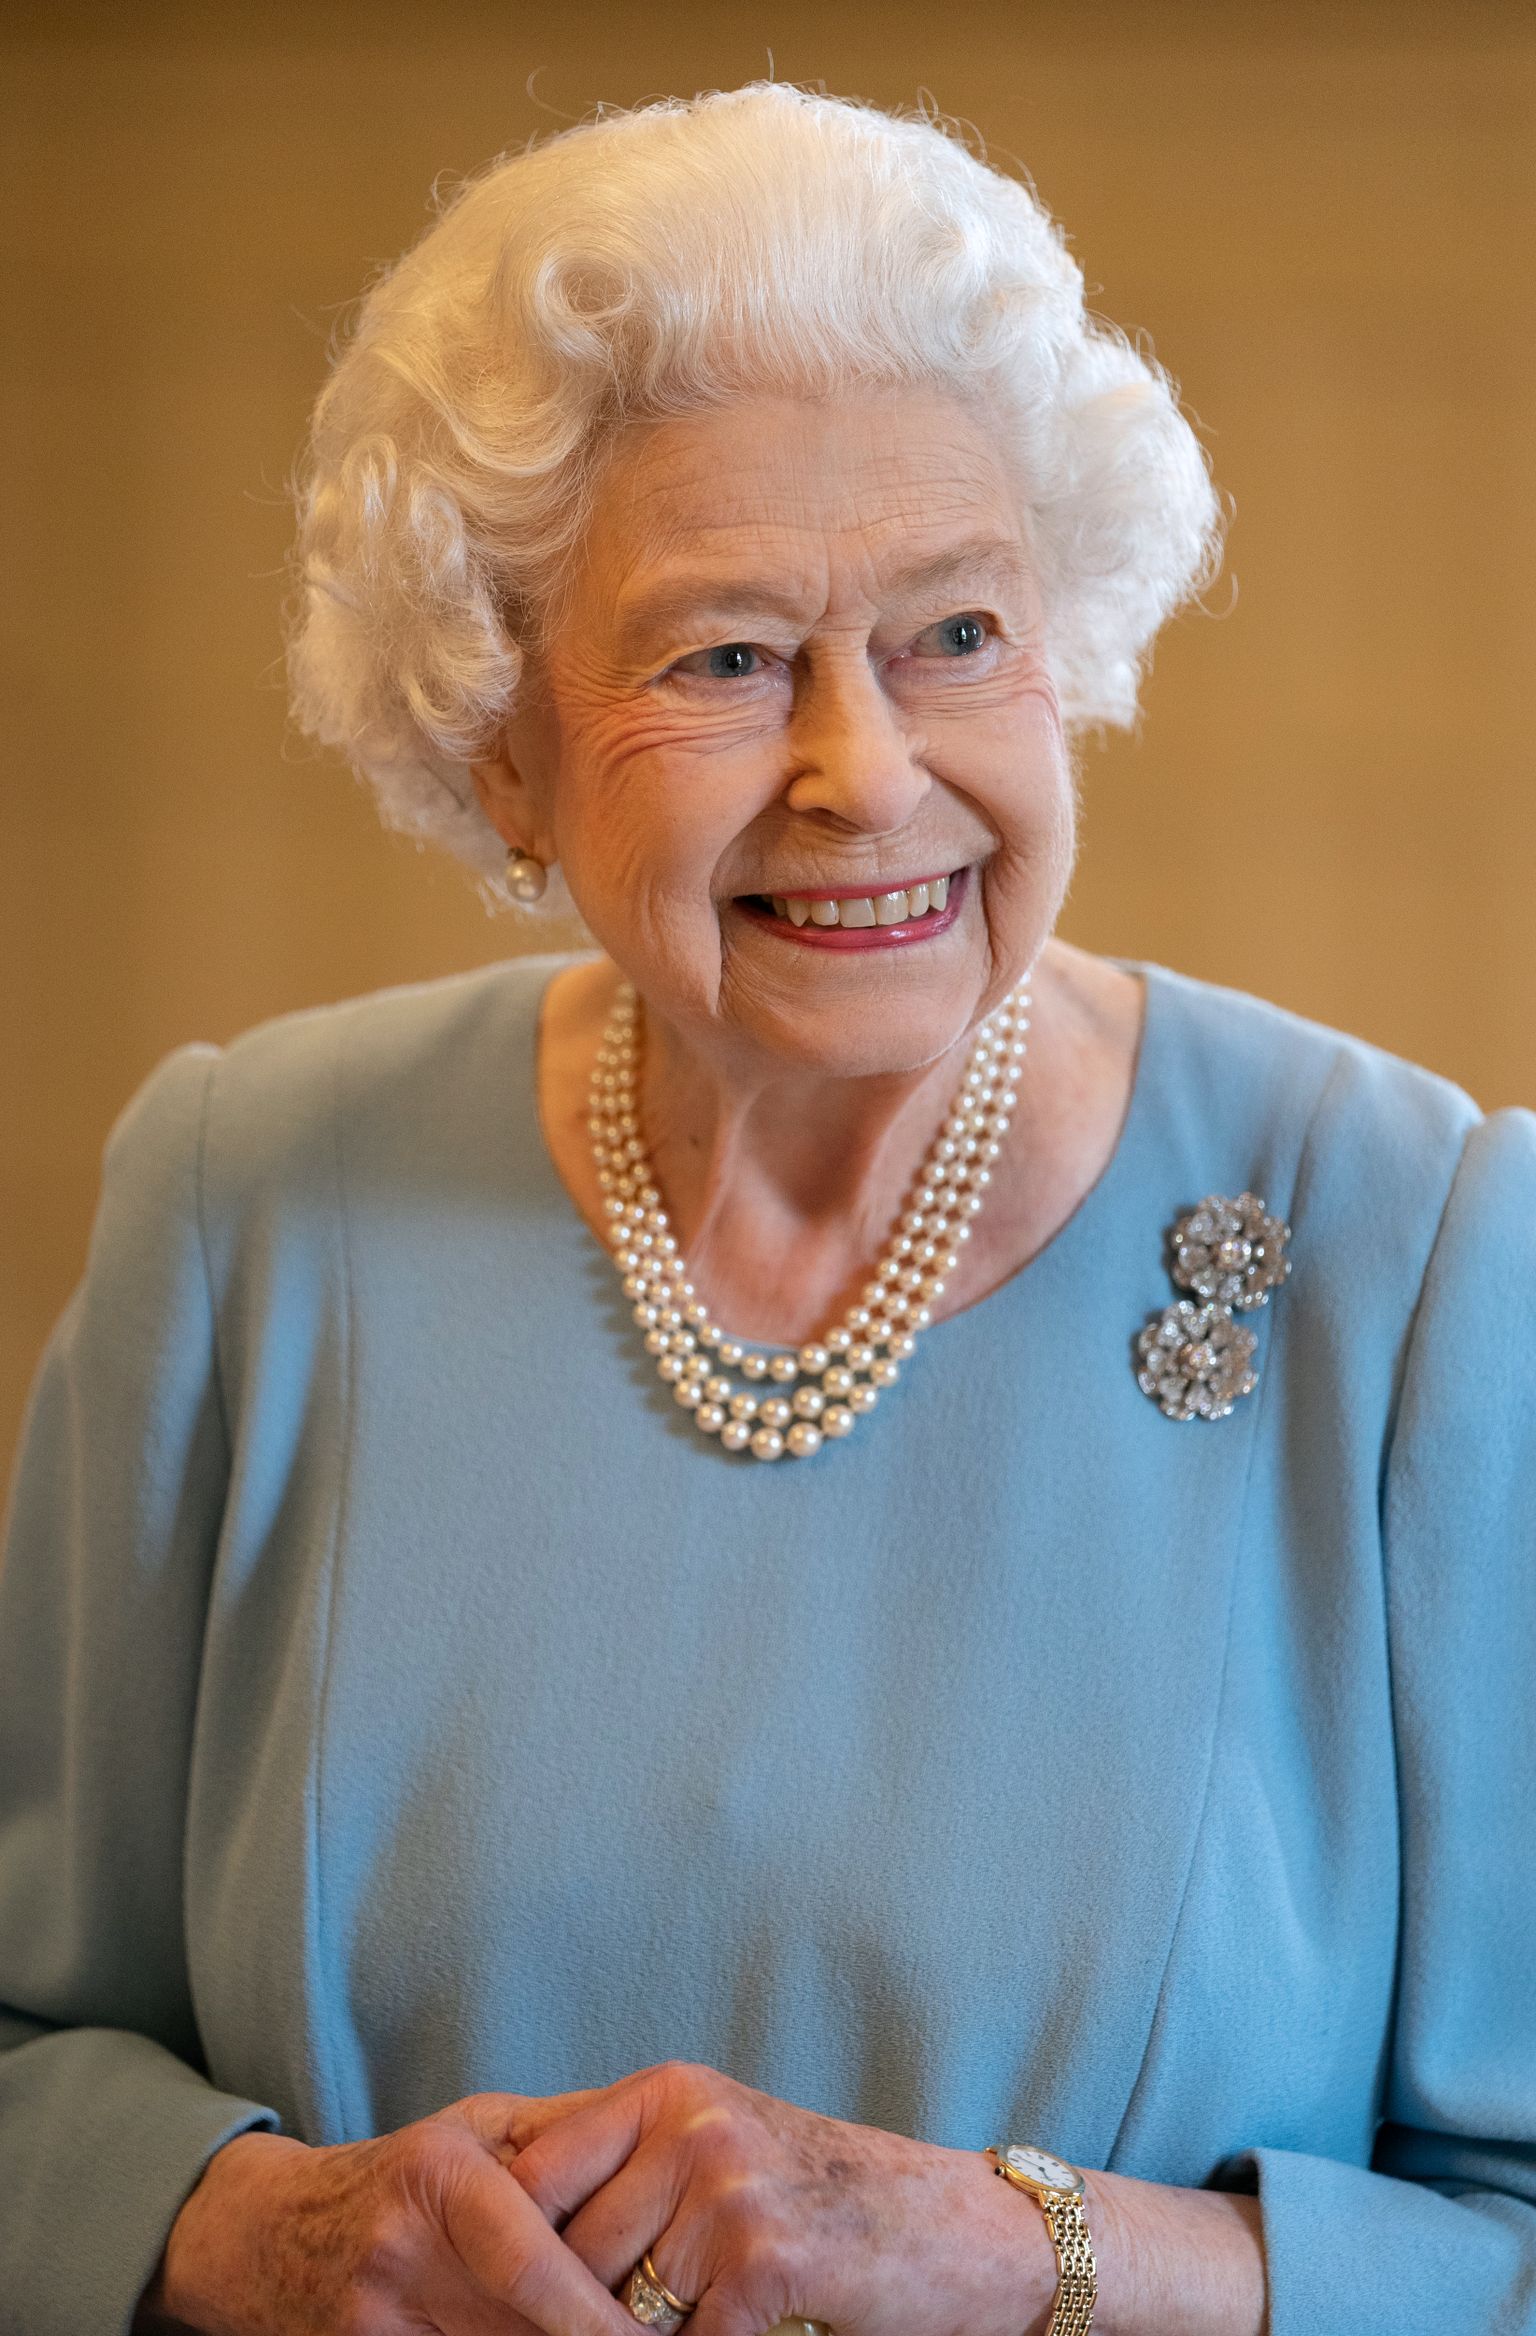 Kuninganna Elizabeth II, kes aprilli lõpus saab 96-aastaseks. Foto on tehtud 5. veebruaril 2022.